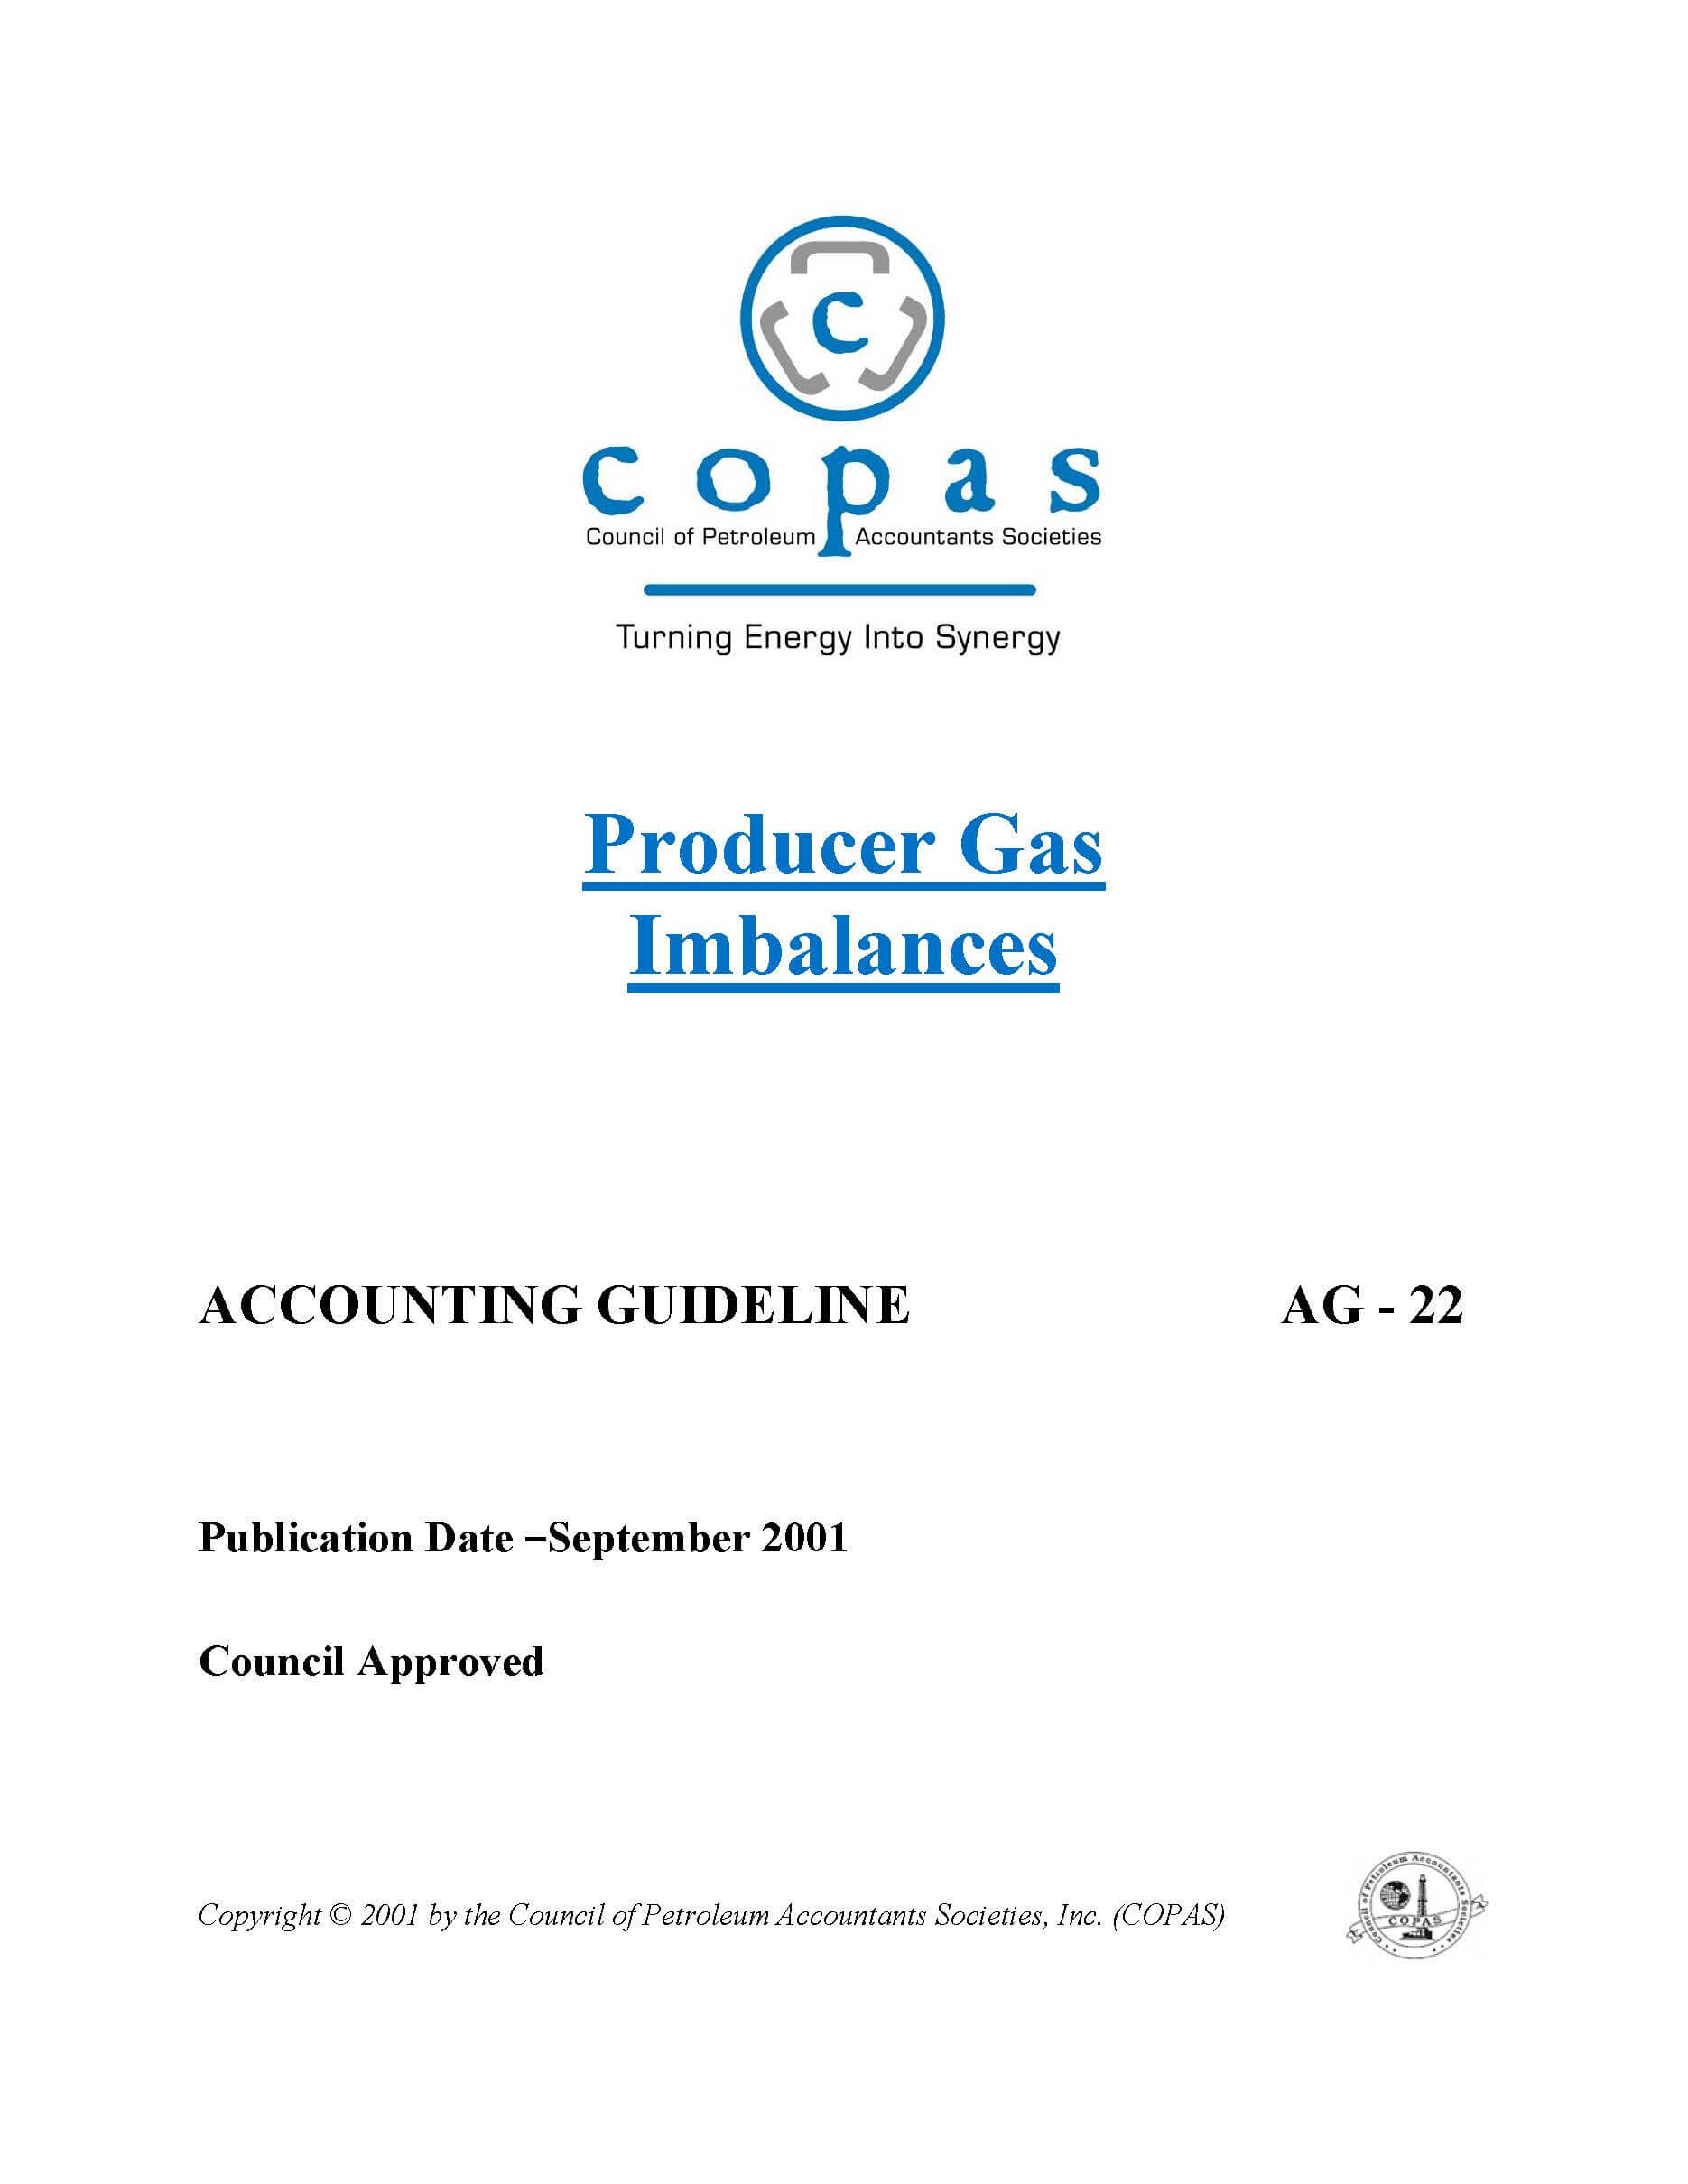 AG-22 Producer Gas Imbalances